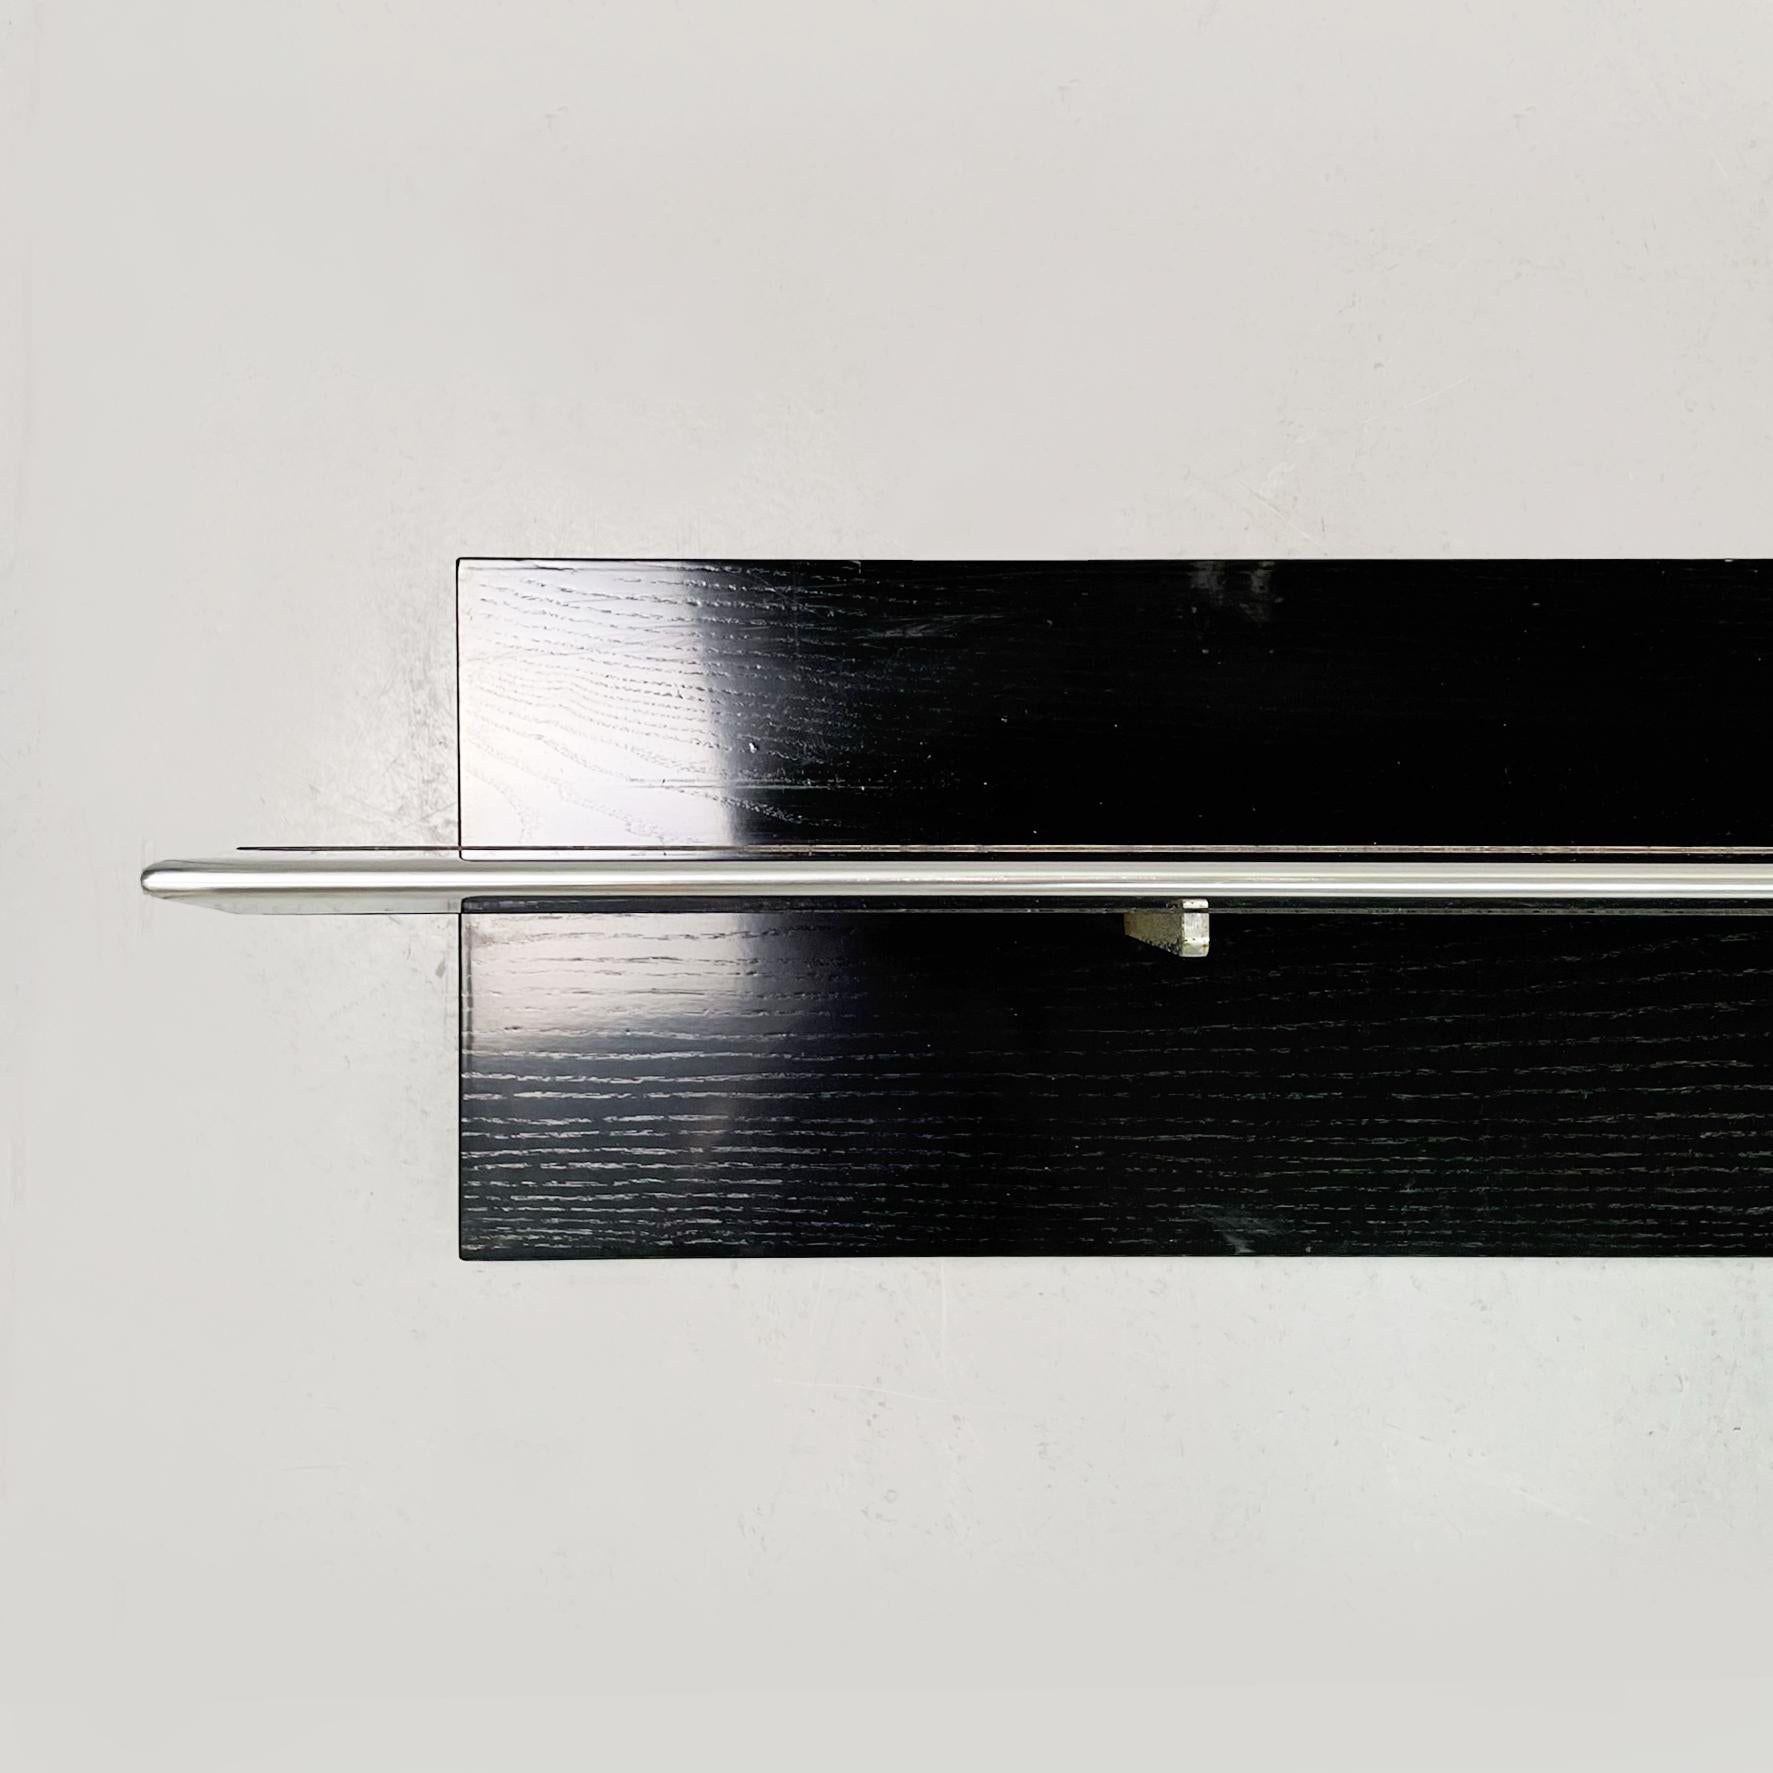 Italienische Moderne Großes Regal aus schwarzem Holz und Stahl, 1980er Jahre
Großes Regal mit rechteckiger Platte aus schwarz lackiertem Holz und Stahl. Das Regal hat eine vertikale Achse, auf der die 3 Stahlstützen angebracht